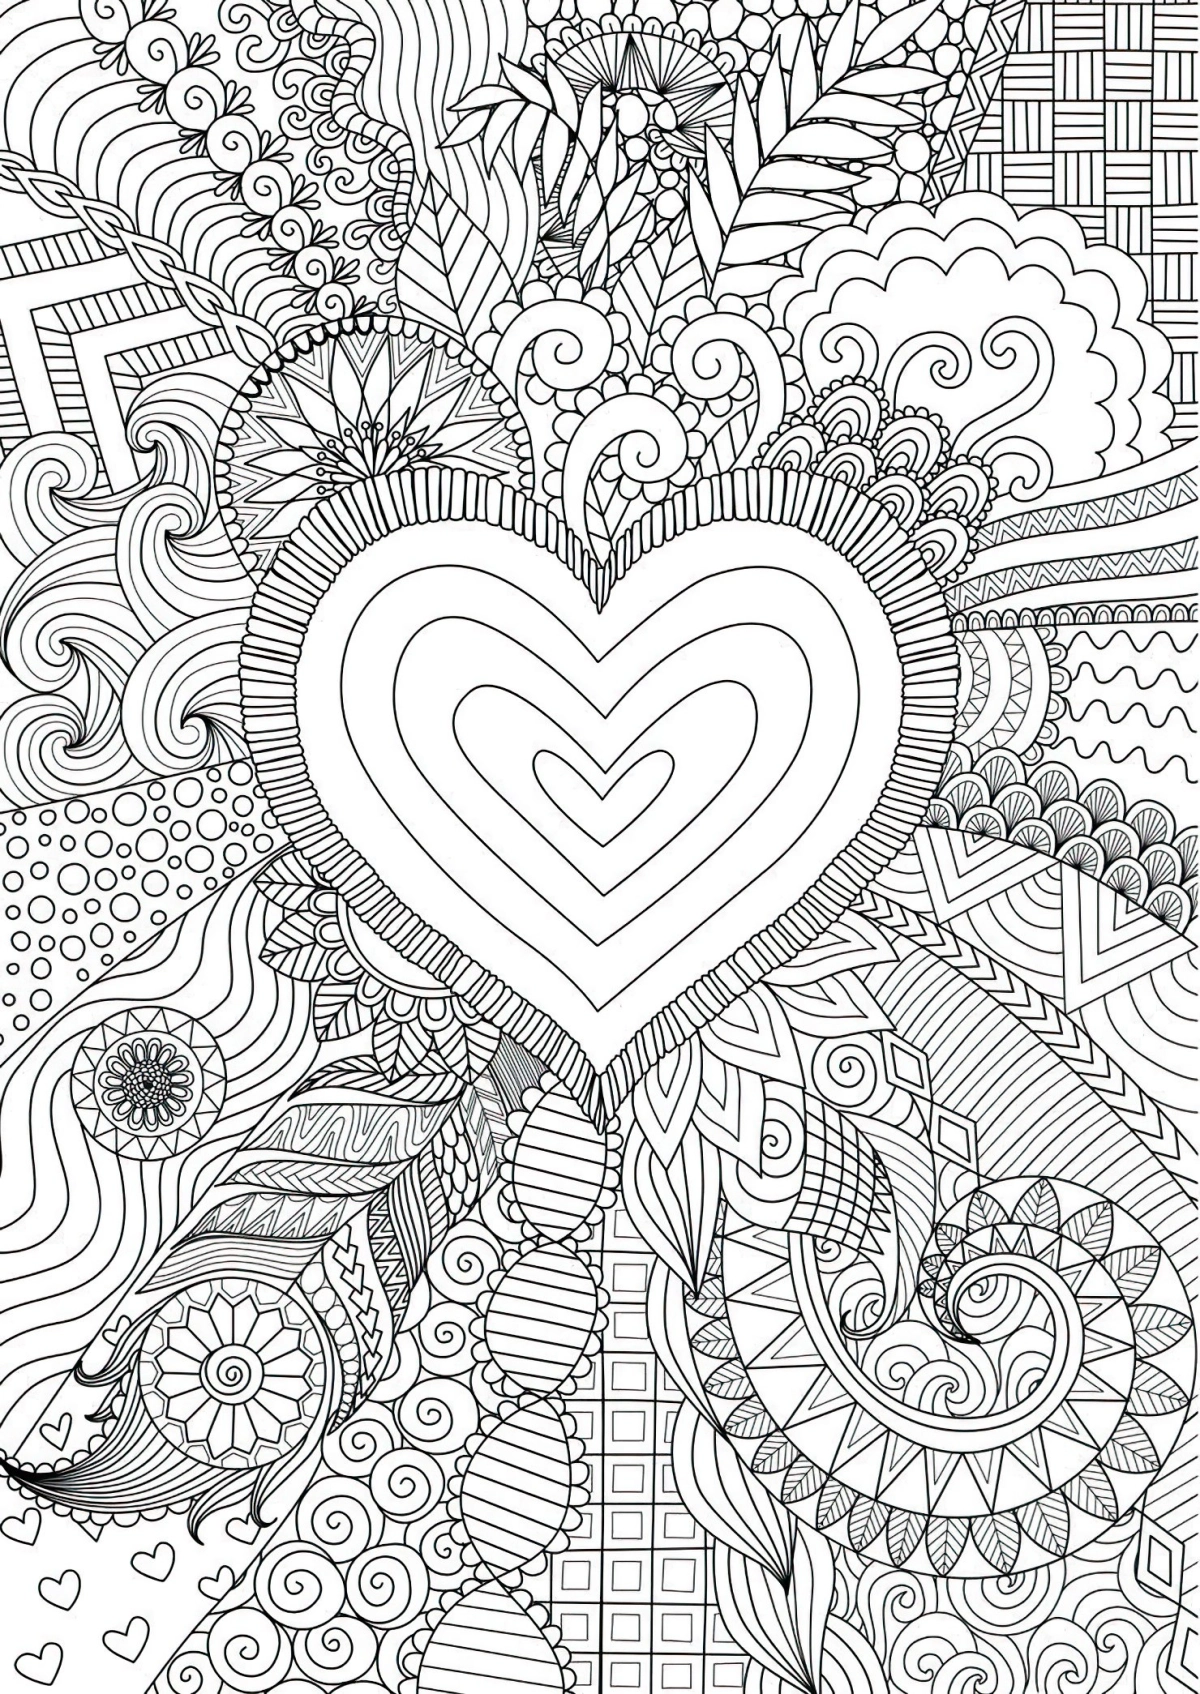 dessin hippie aesthetic coloriage coeur fleurs motifs geometriques courbes